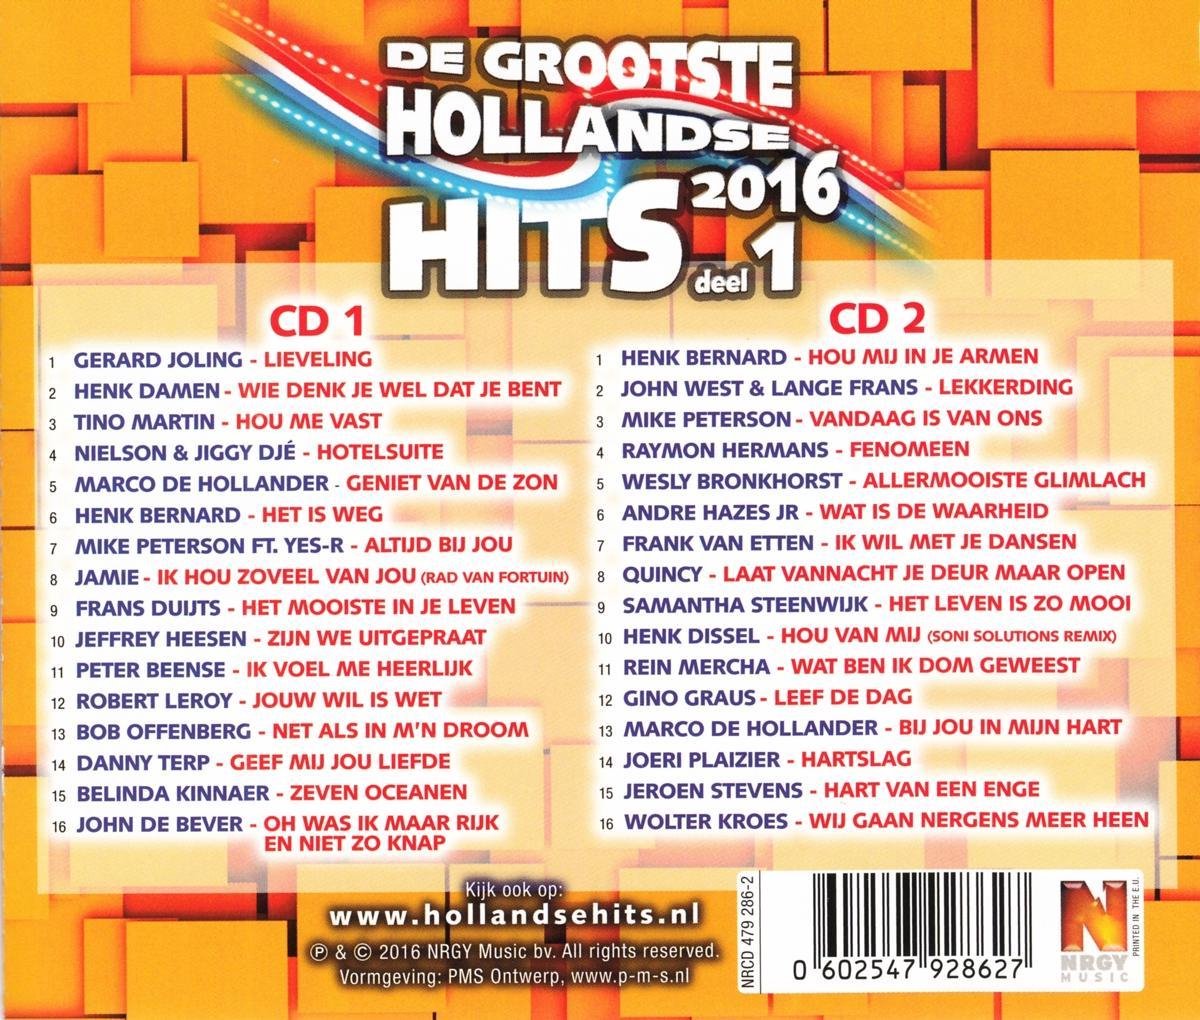 Autonomie zuur werkplaats Hollandse Hits 2016 Deel 1, various artists | CD (album) | Muziek | bol.com